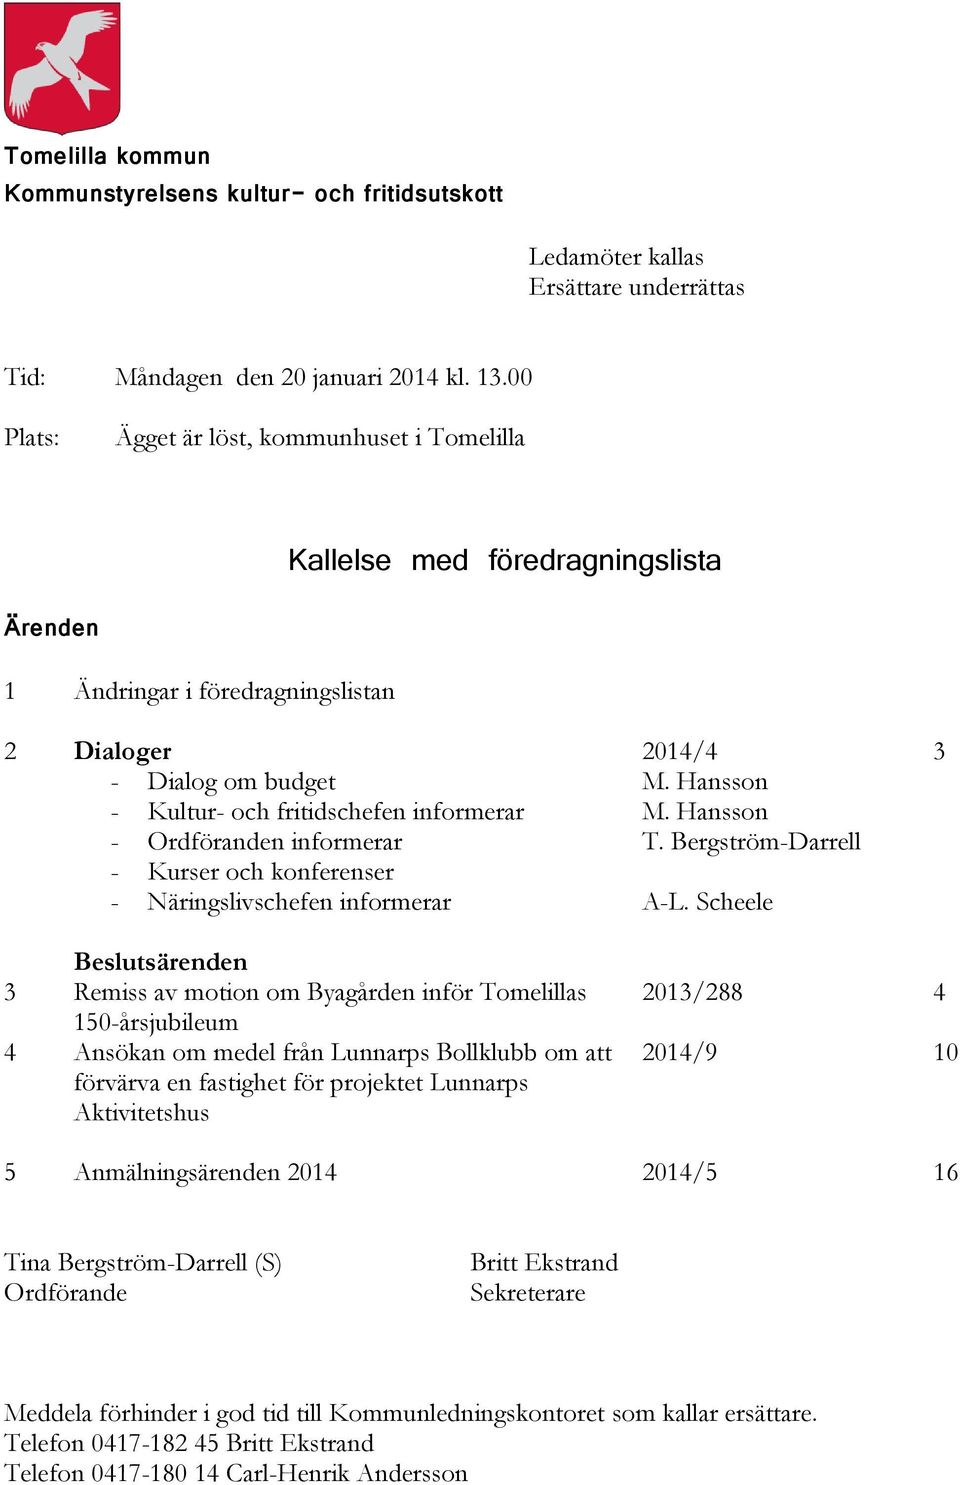 Ordföranden informerar - Kurser och konferenser - Näringslivschefen informerar 2014/4 M. Hansson M. Hansson T. Bergström-Darrell A-L.